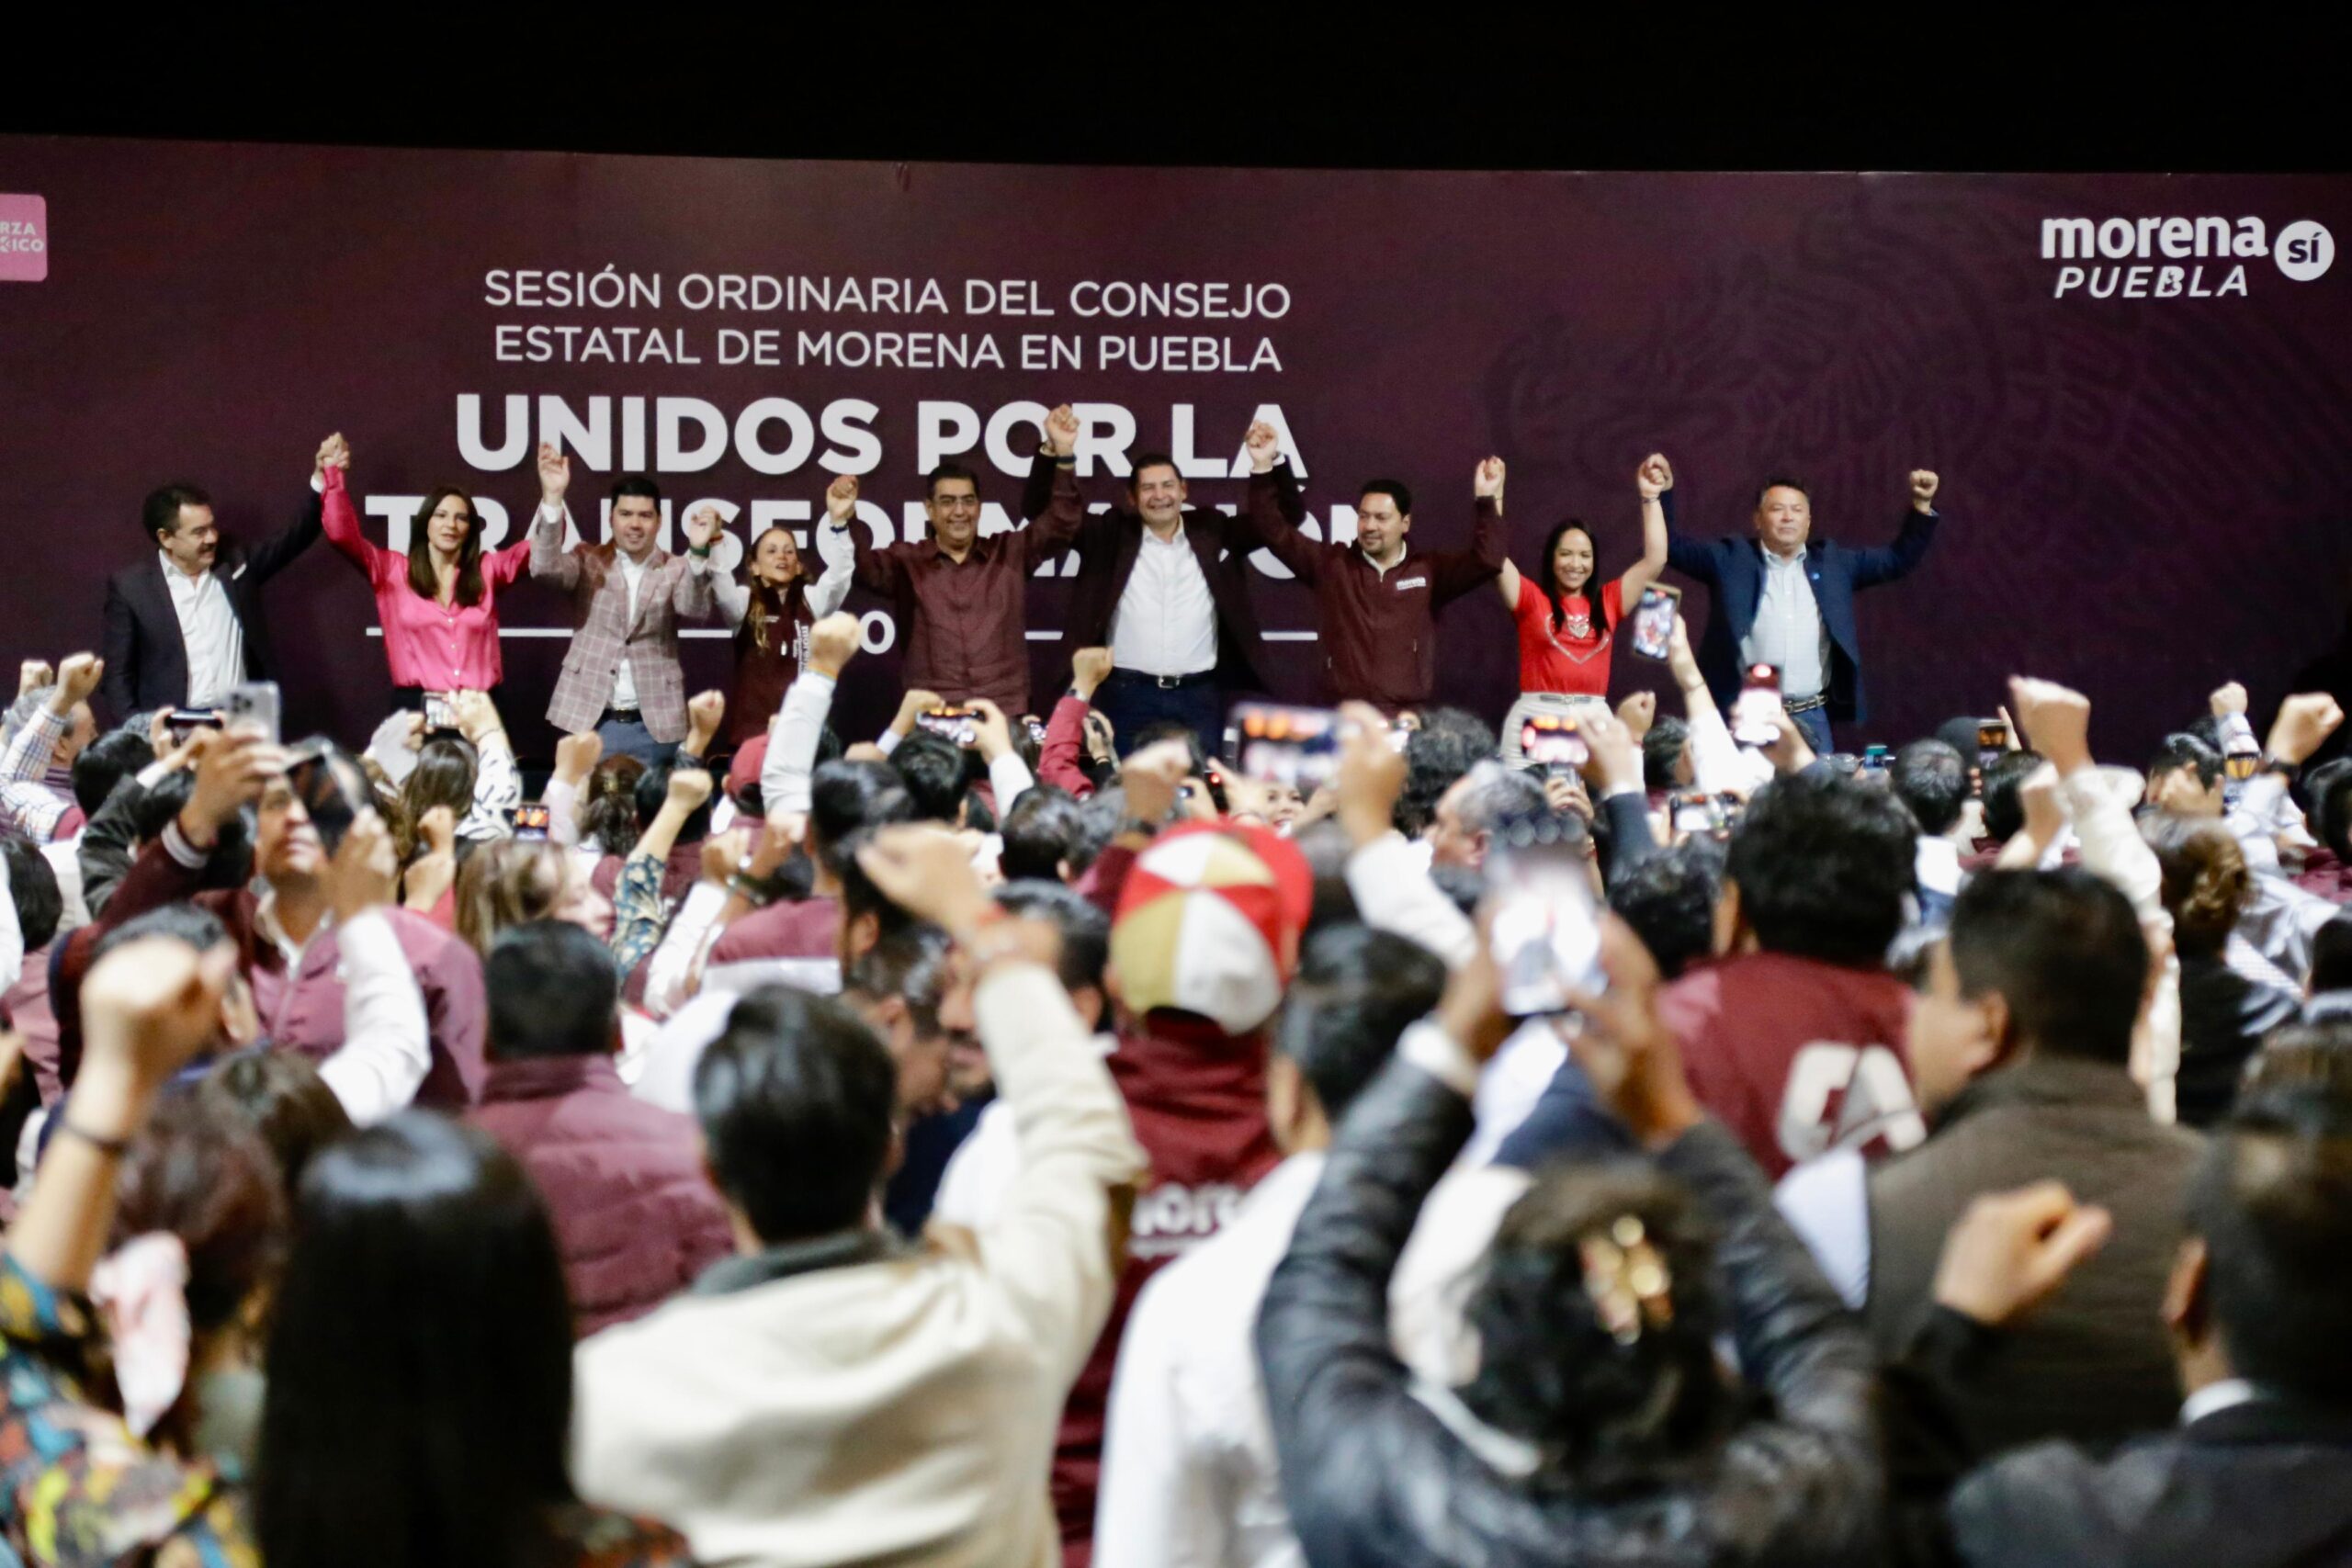 Aremnta es elegido candidato de Morena a la gubernatura de Puebla